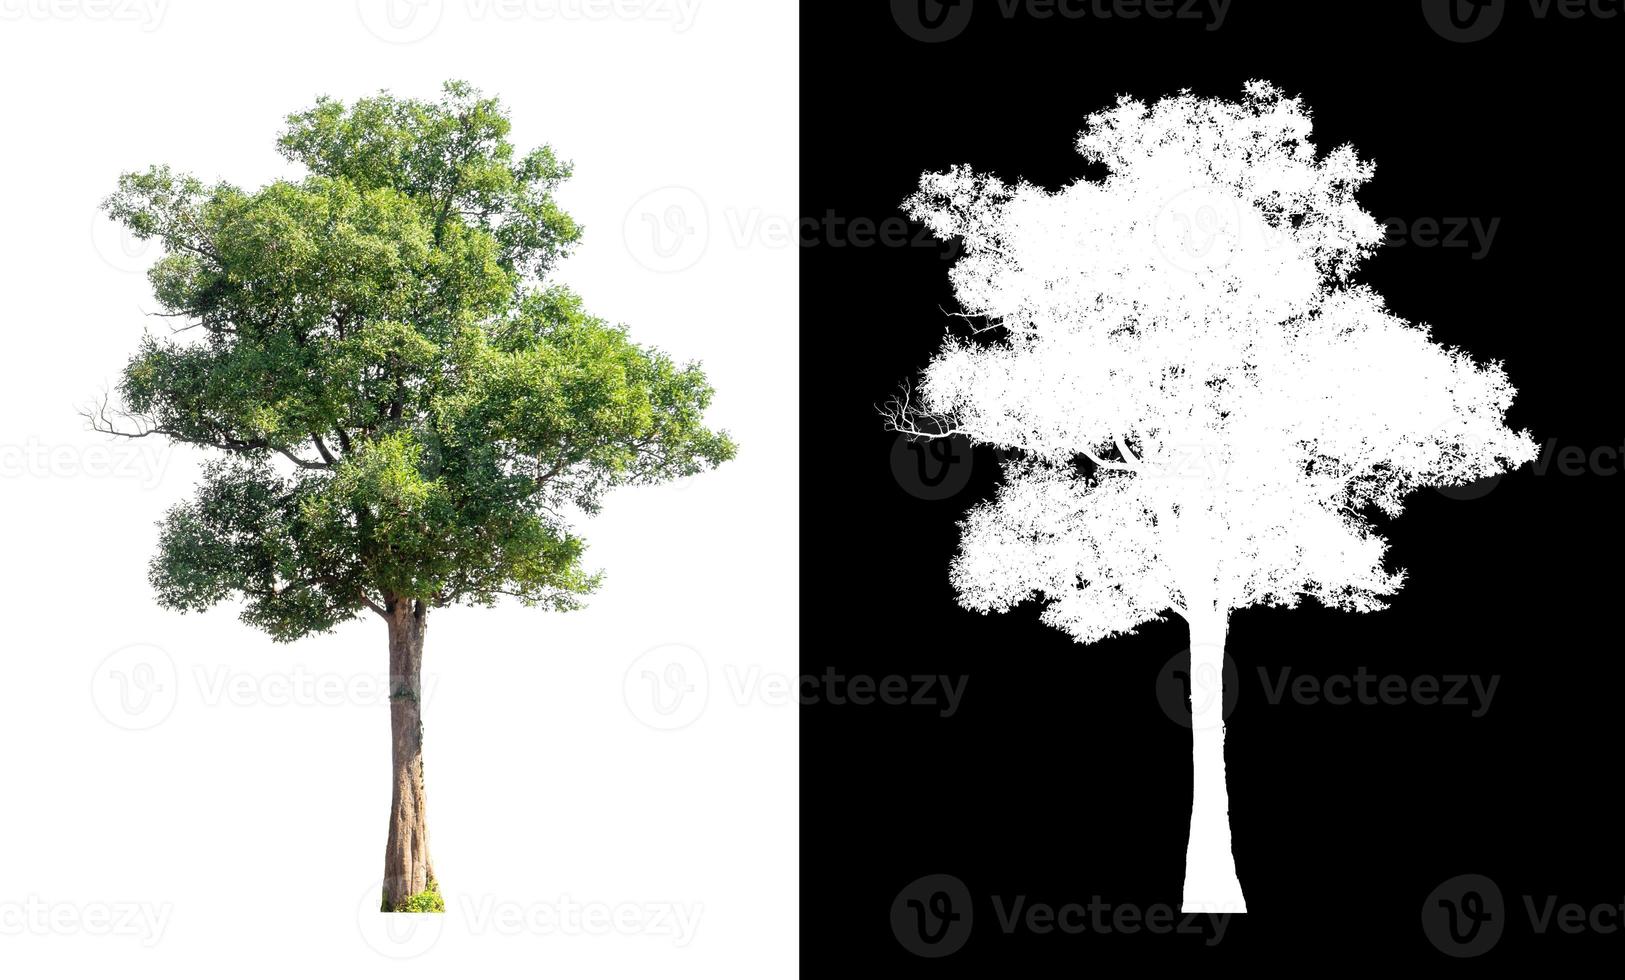 única árvore com traçado de recorte e canal alfa em fundo preto foto